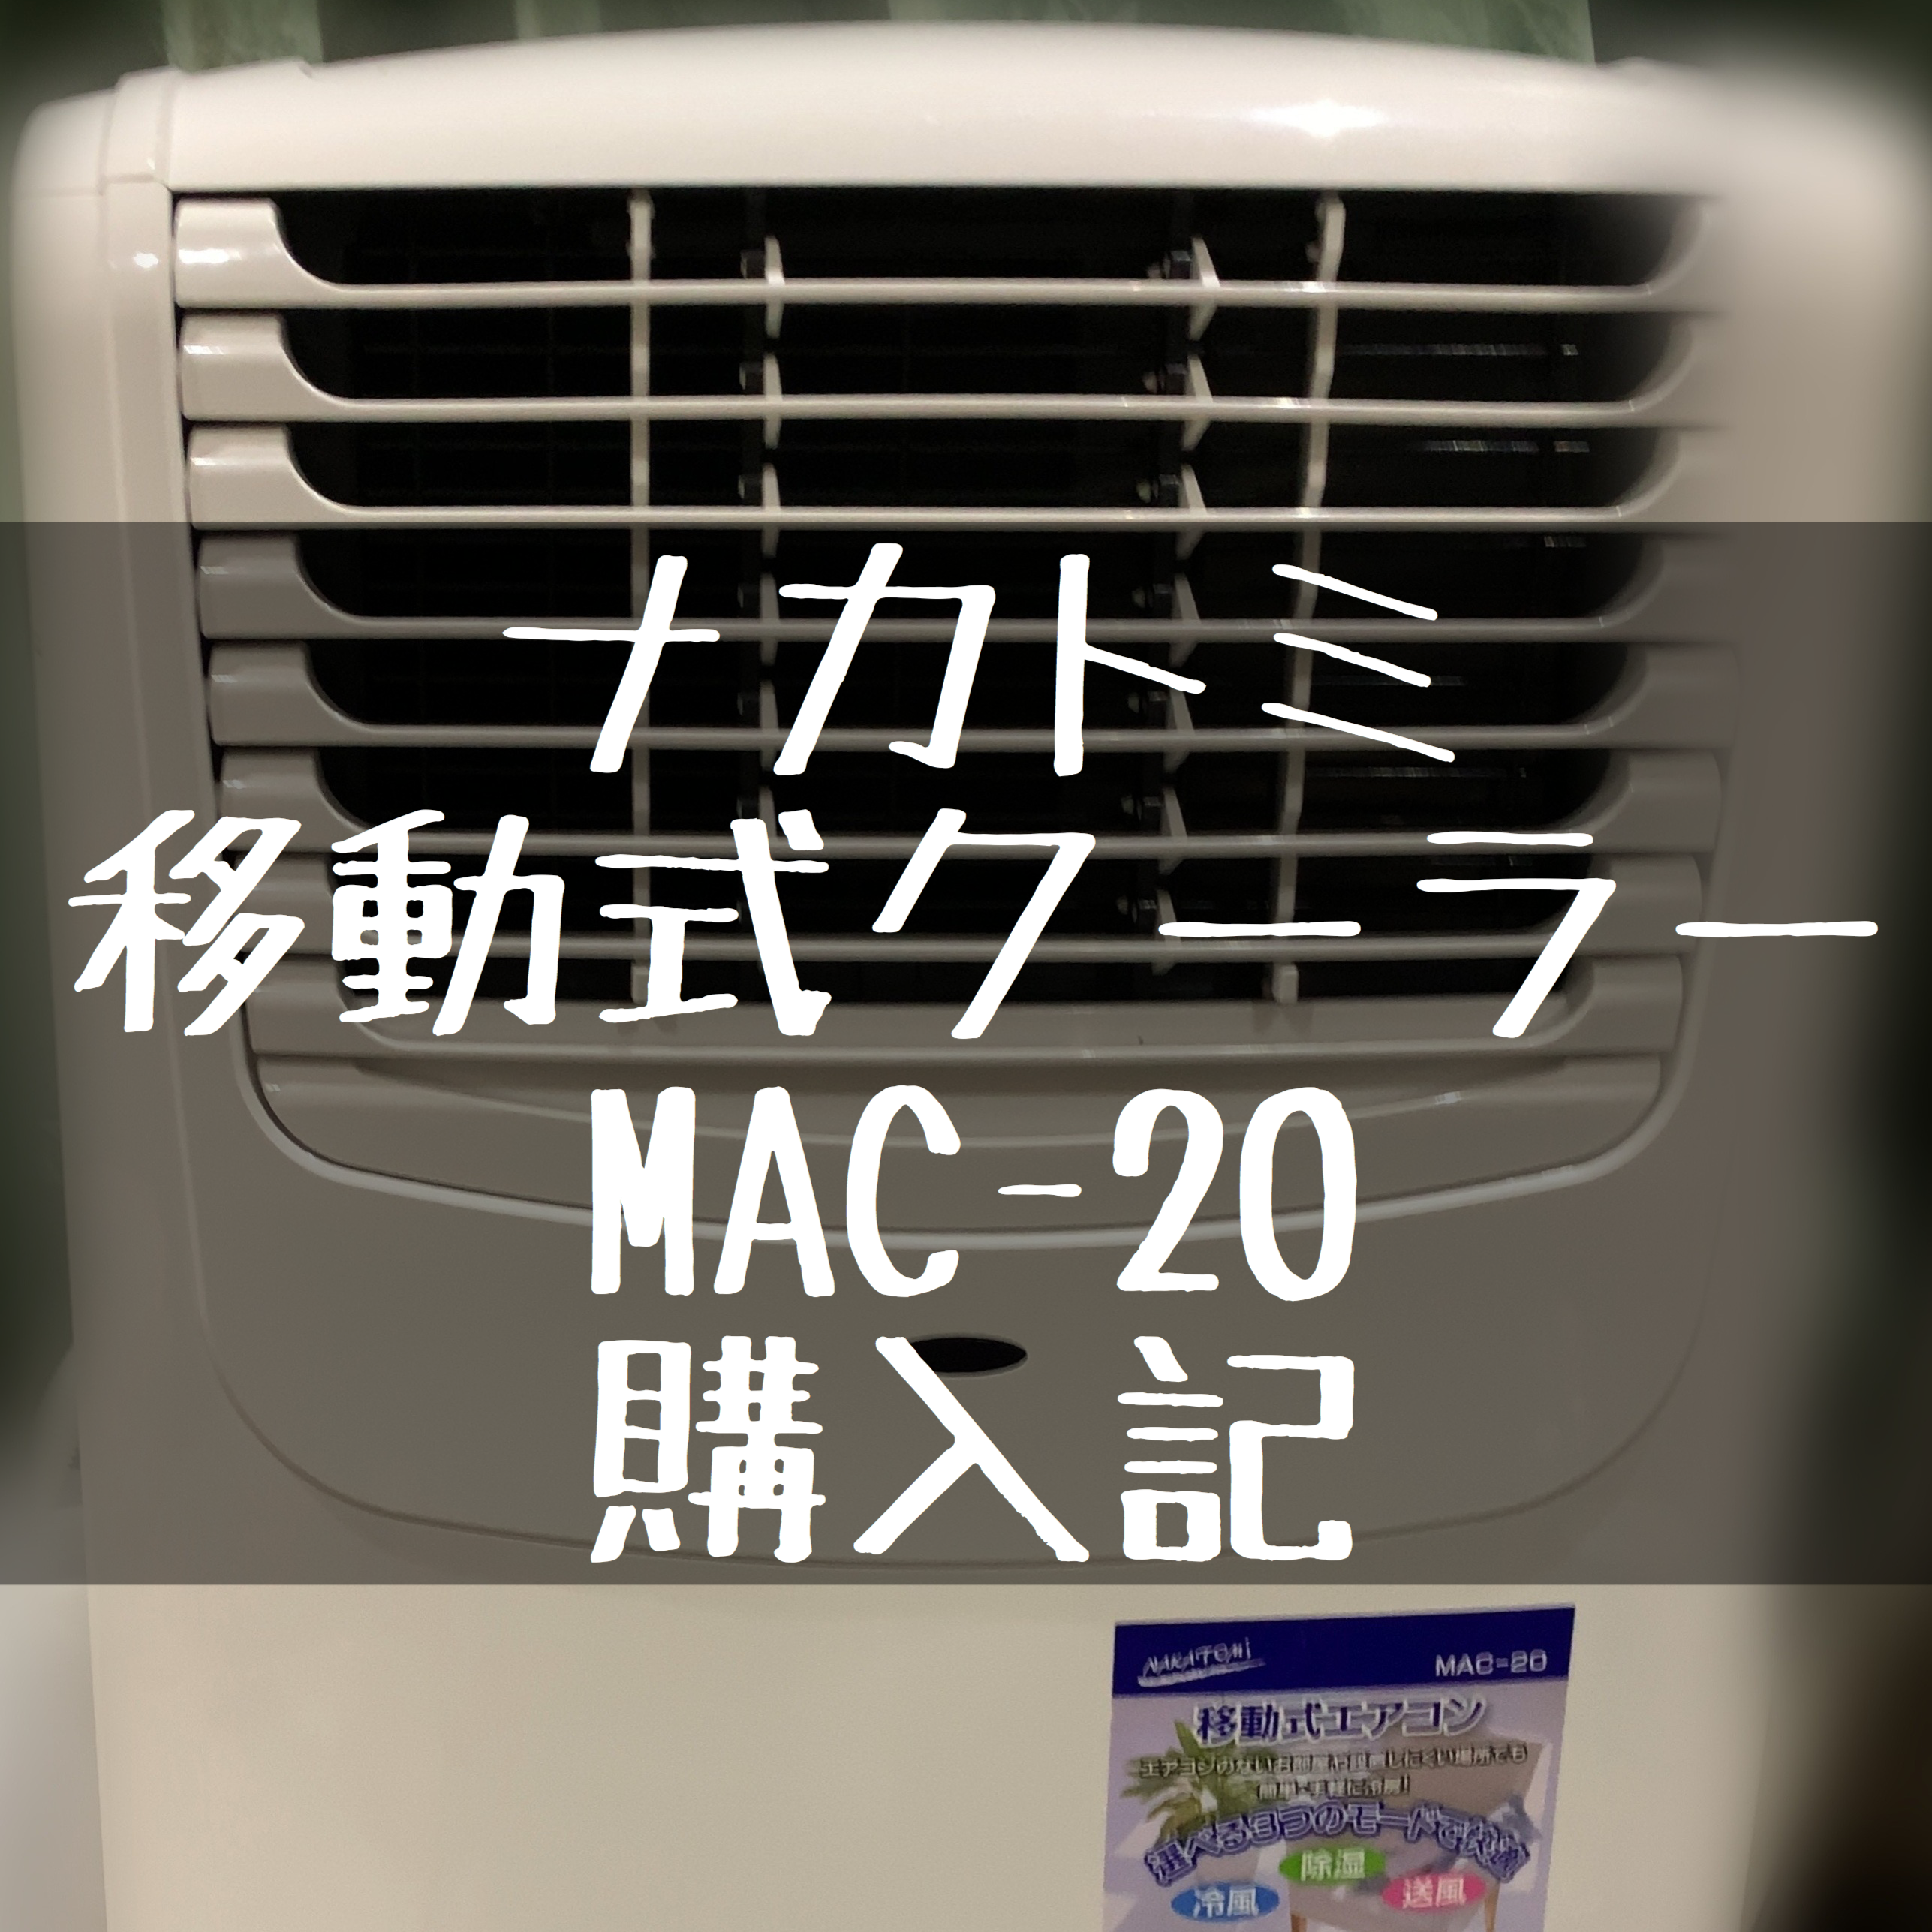 ナカトミの移動式クーラーMAC-20購入感想メモ③　猛暑日半月使用で気づいた注意点と、より冷やすためのポイント